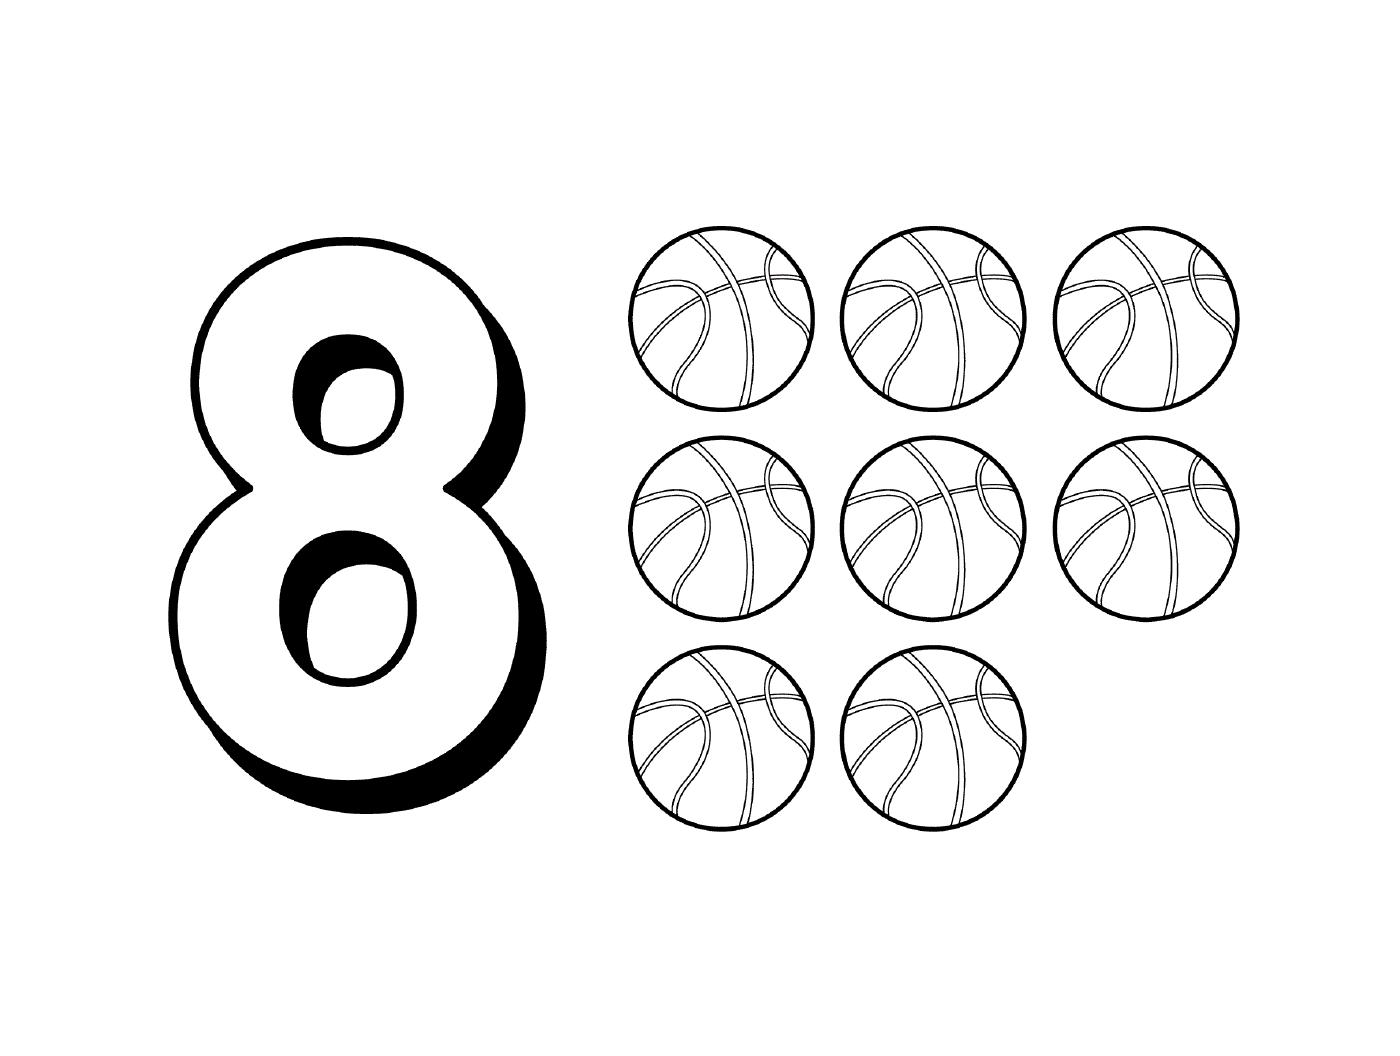  Figura oito com nove bolas de basquete 